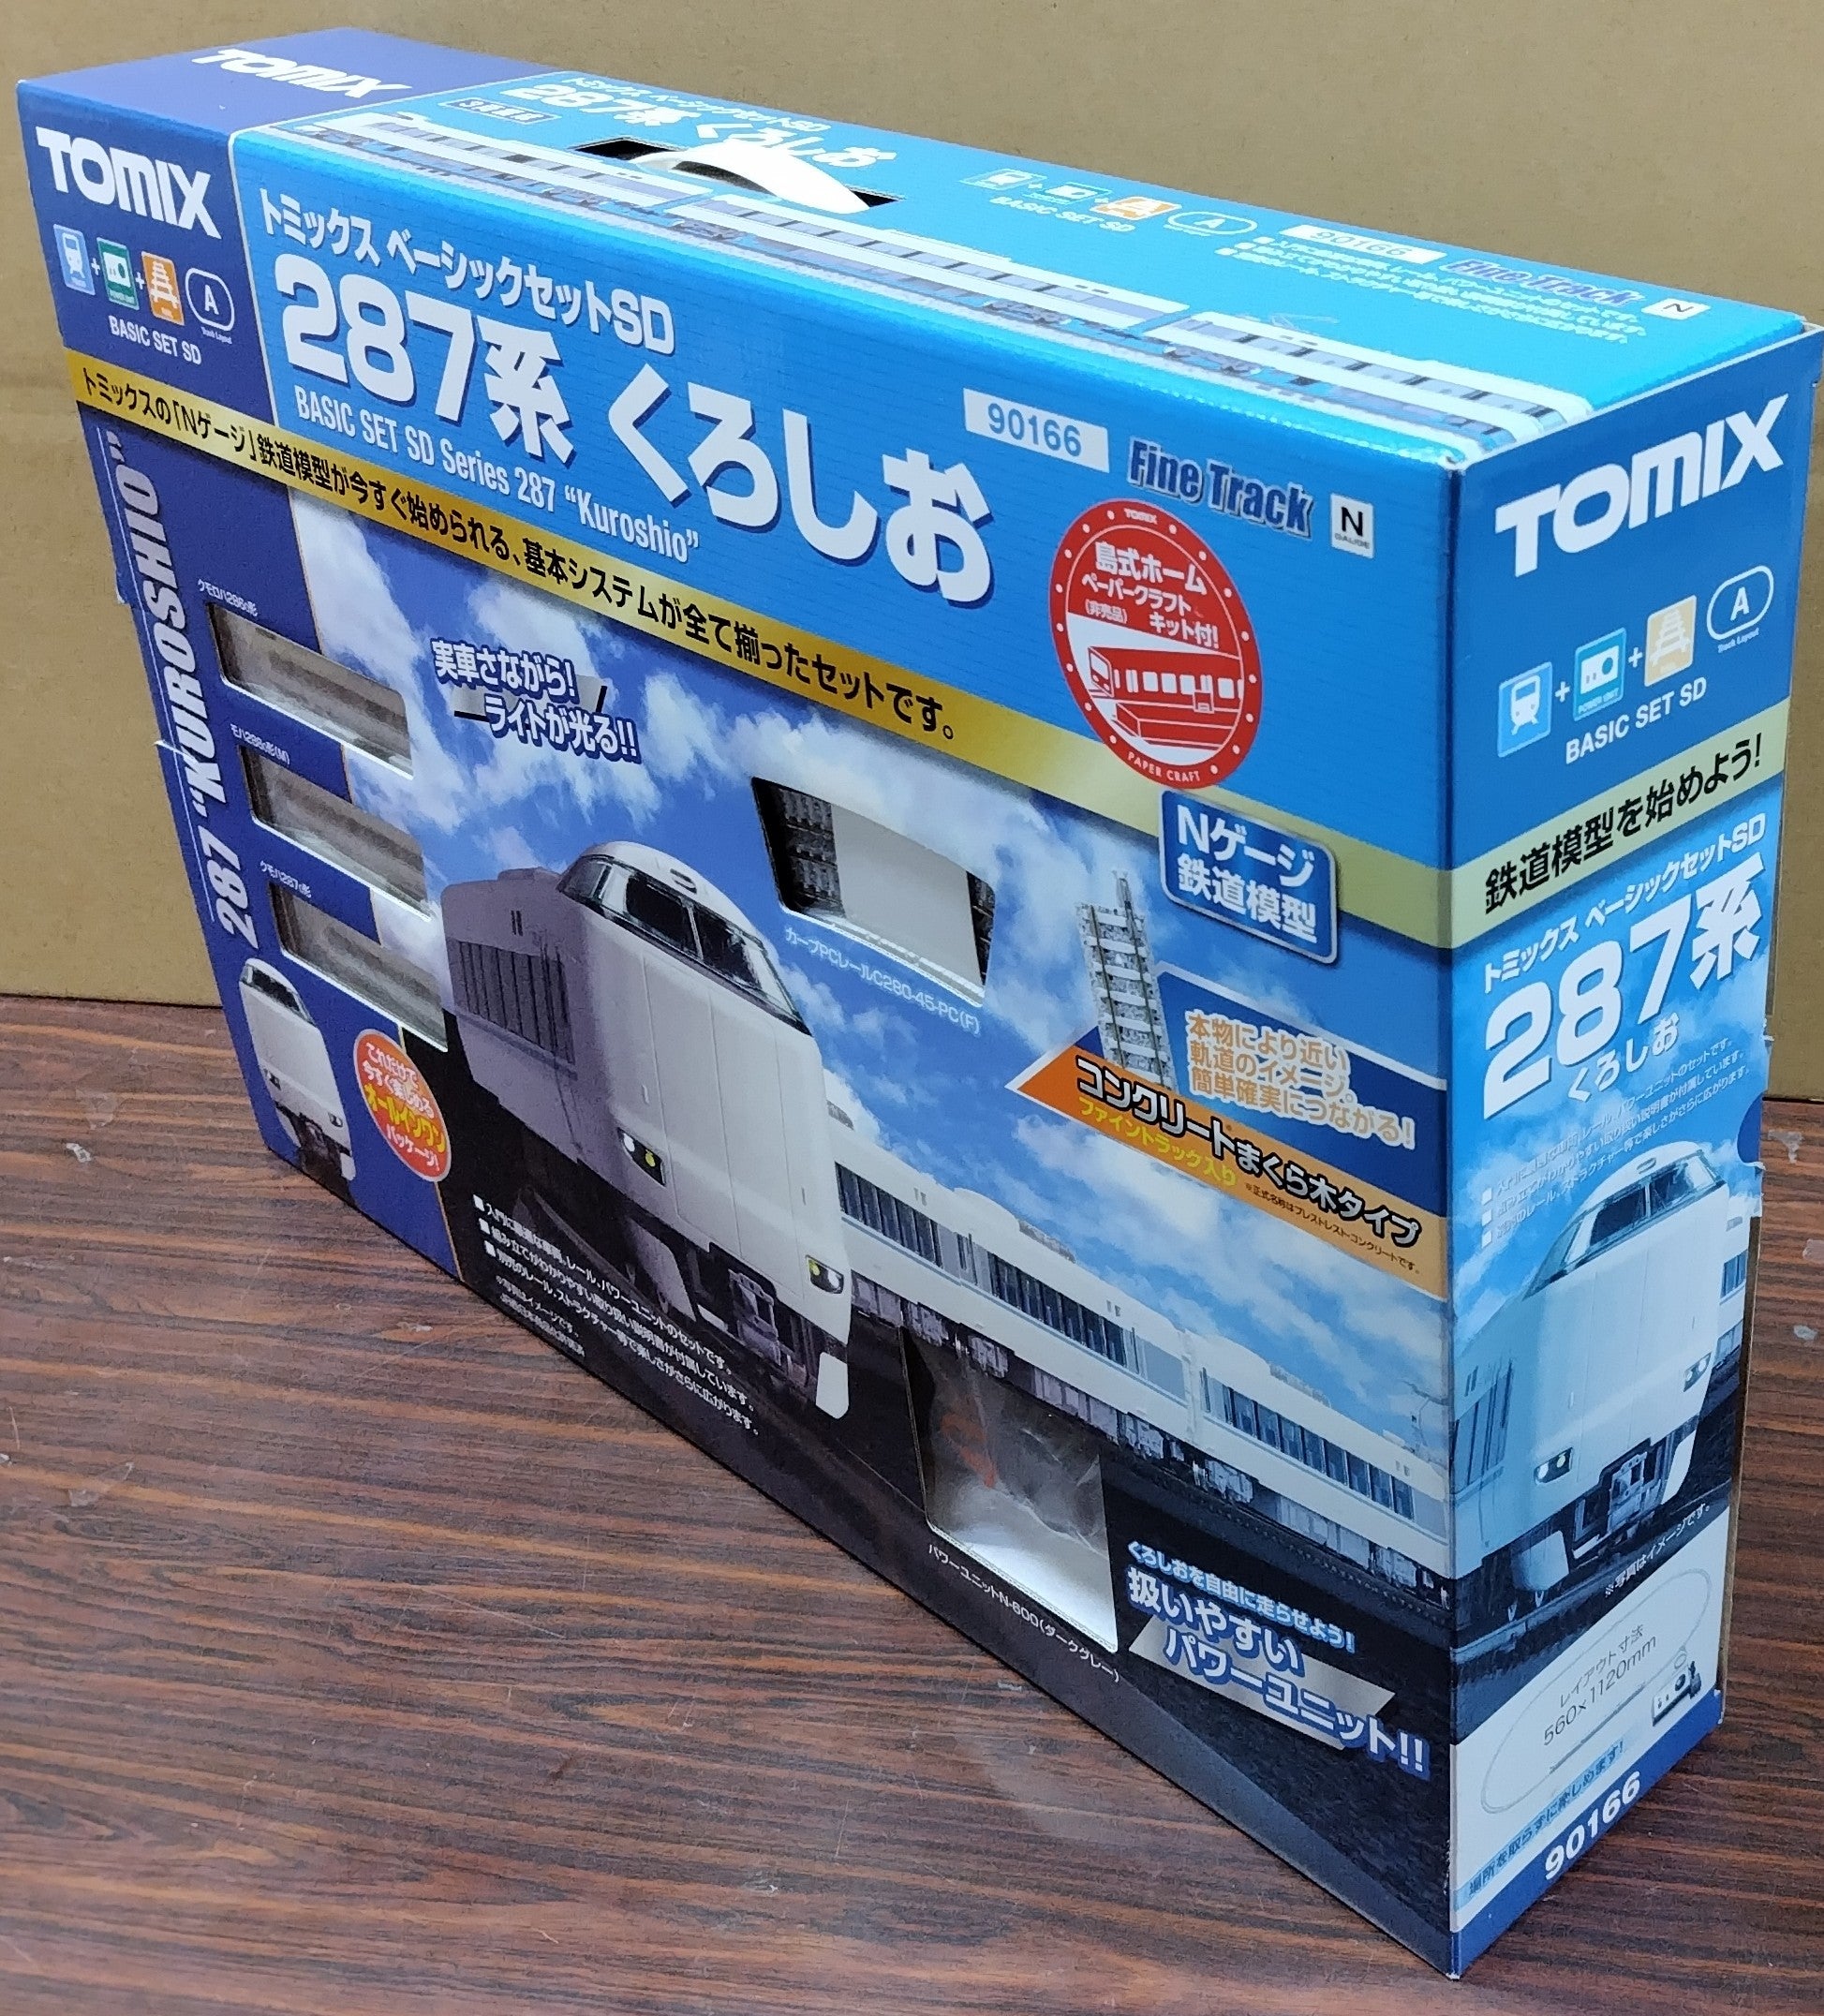 [Damaged BOX] Tomix 90166 Basic Set SD 287 Kuroshio (N) - BanzaiHobby